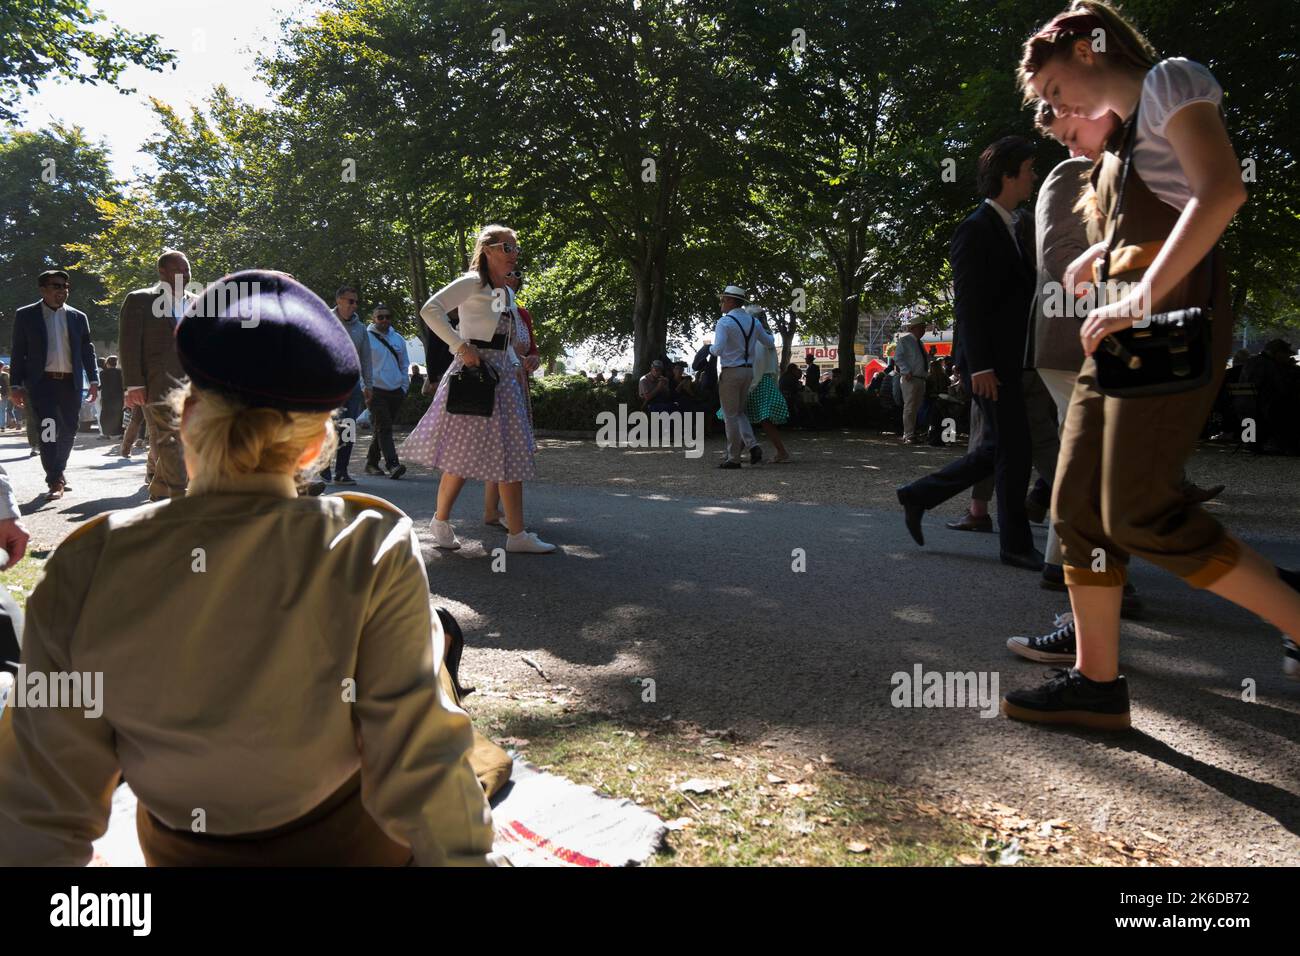 Menschen in Vintage-Kleidung, die an einer Frau in ATS-Uniform vorbeigehen, die auf dem Gras sitzt, BARC Revival Meeting, Goodwood-Rennstrecke, Chichester, Großbritannien Stockfoto